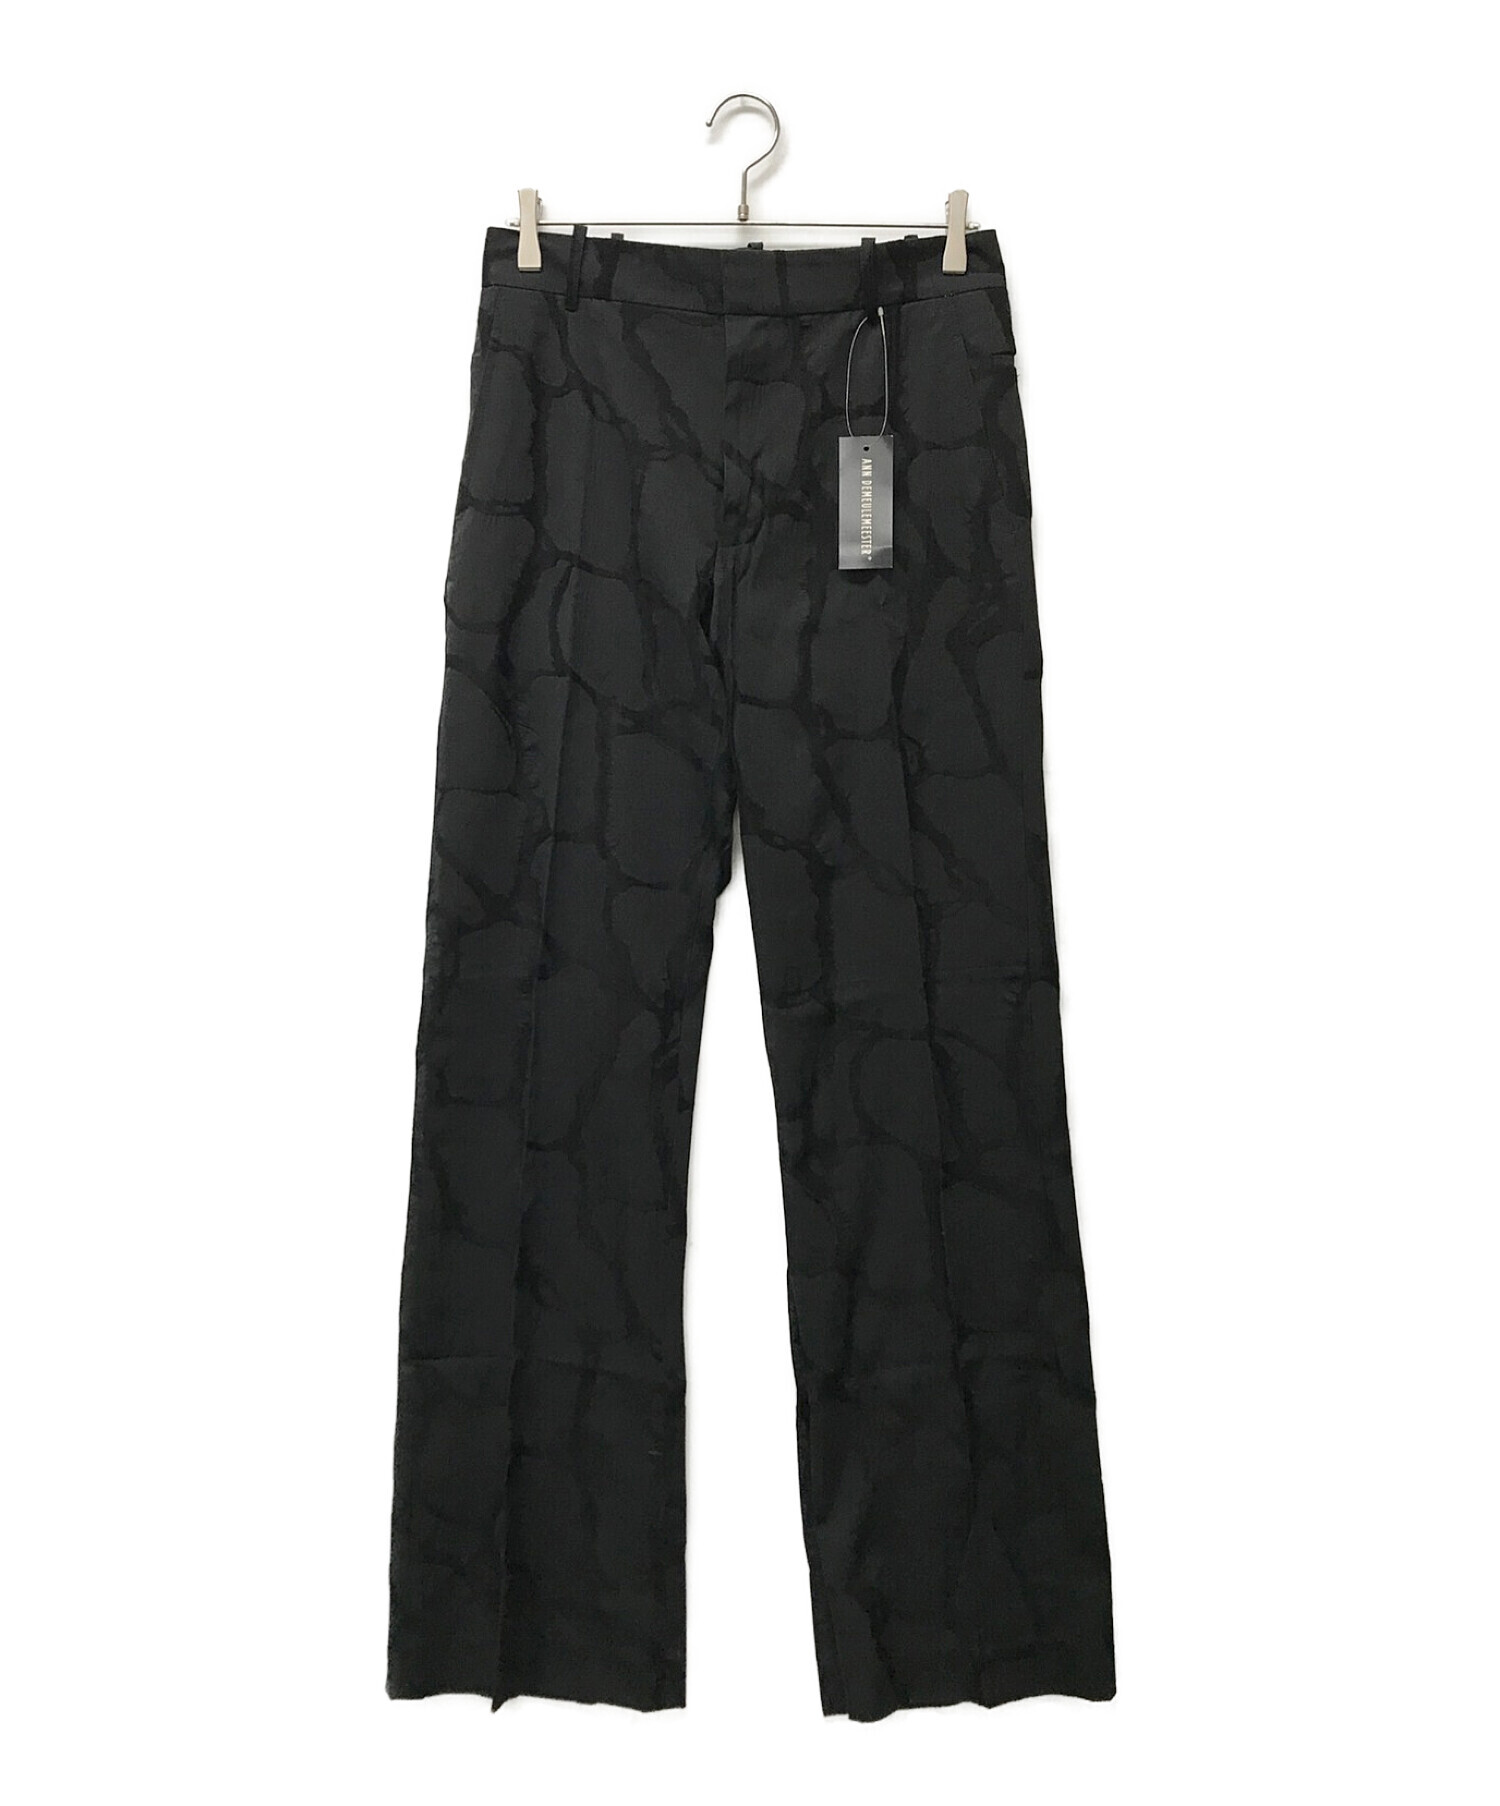 ANN DEMEULEMEESTER (アンドゥムルメステール) 90sジャガード刺繍総柄パンツ ブラック サイズ:S 未使用品